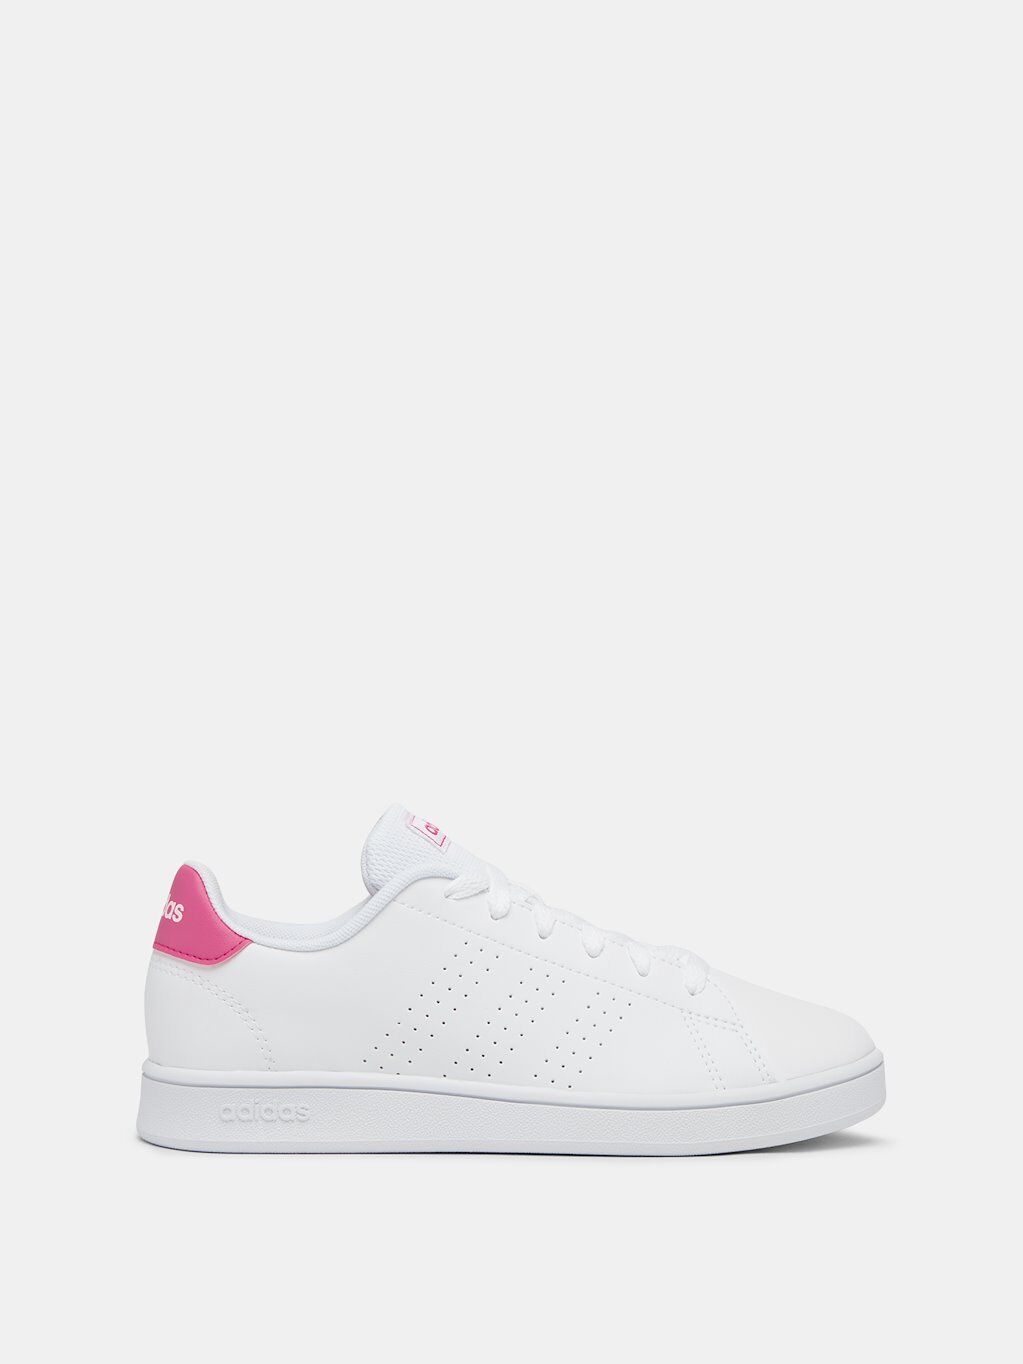 Adidas Sapatilhas - Ténis Adidas Advantage - Branco/Rosa - Criança Rapariga